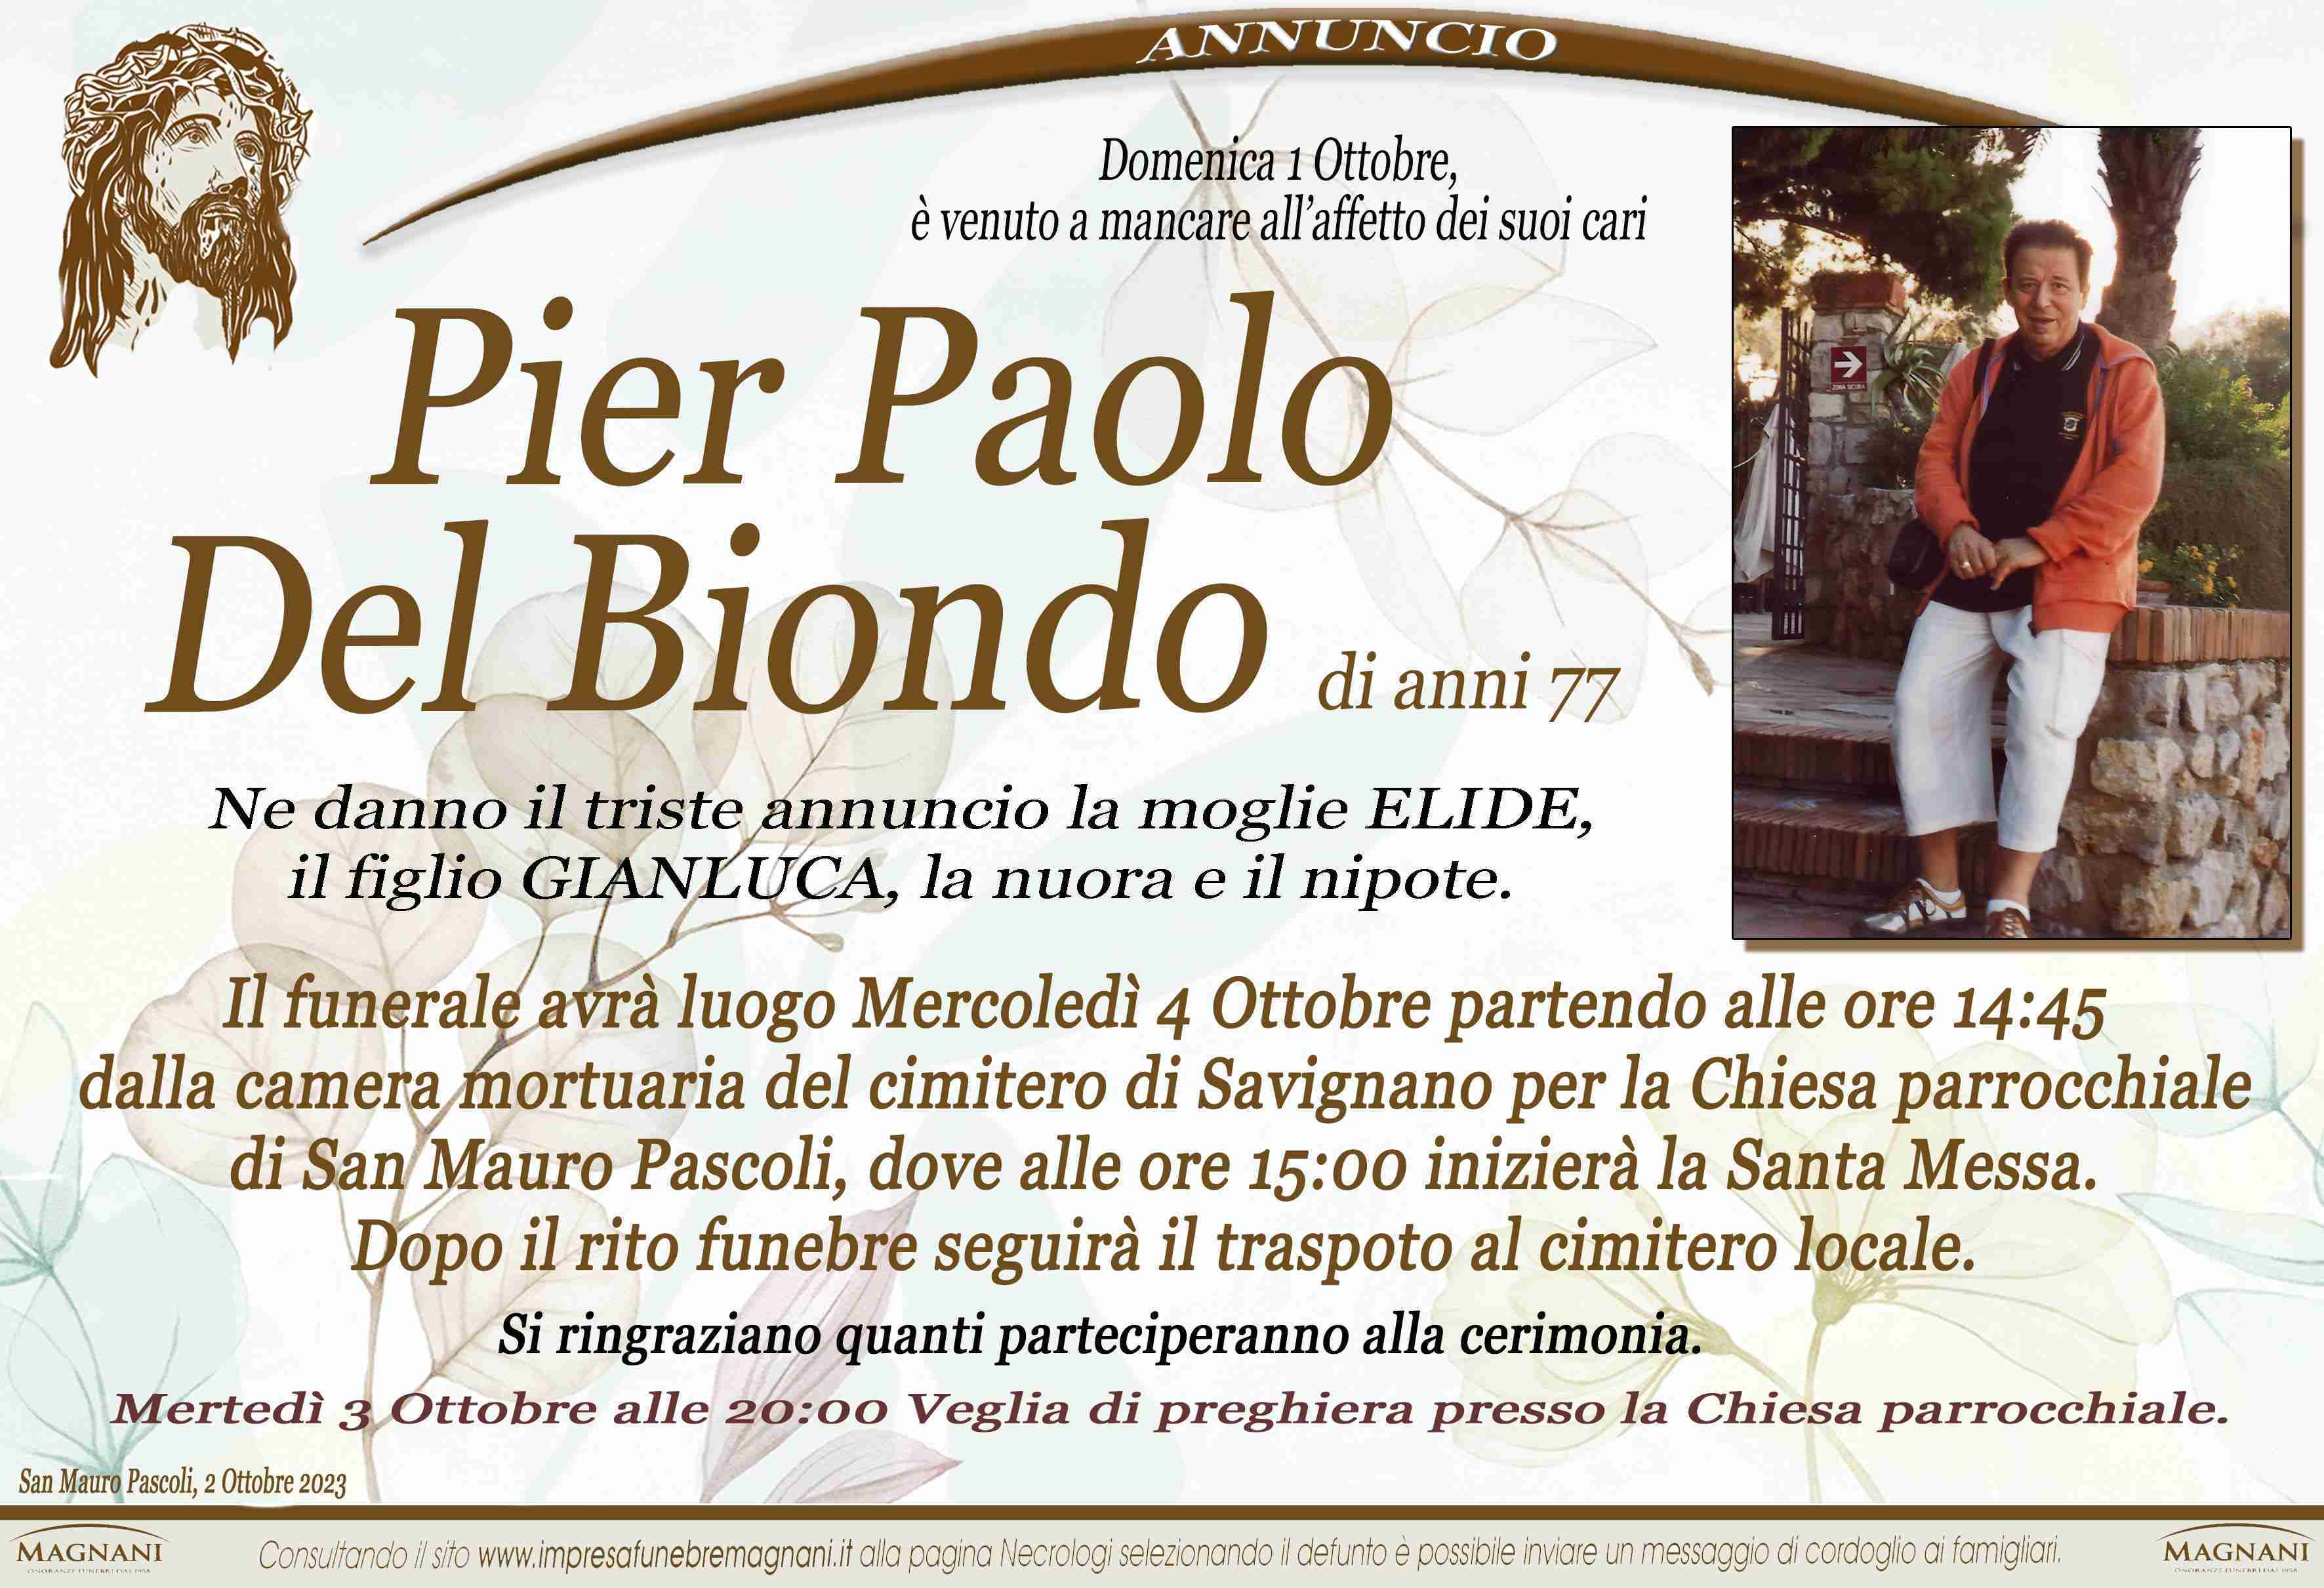 Pier Paolo Del Biondo